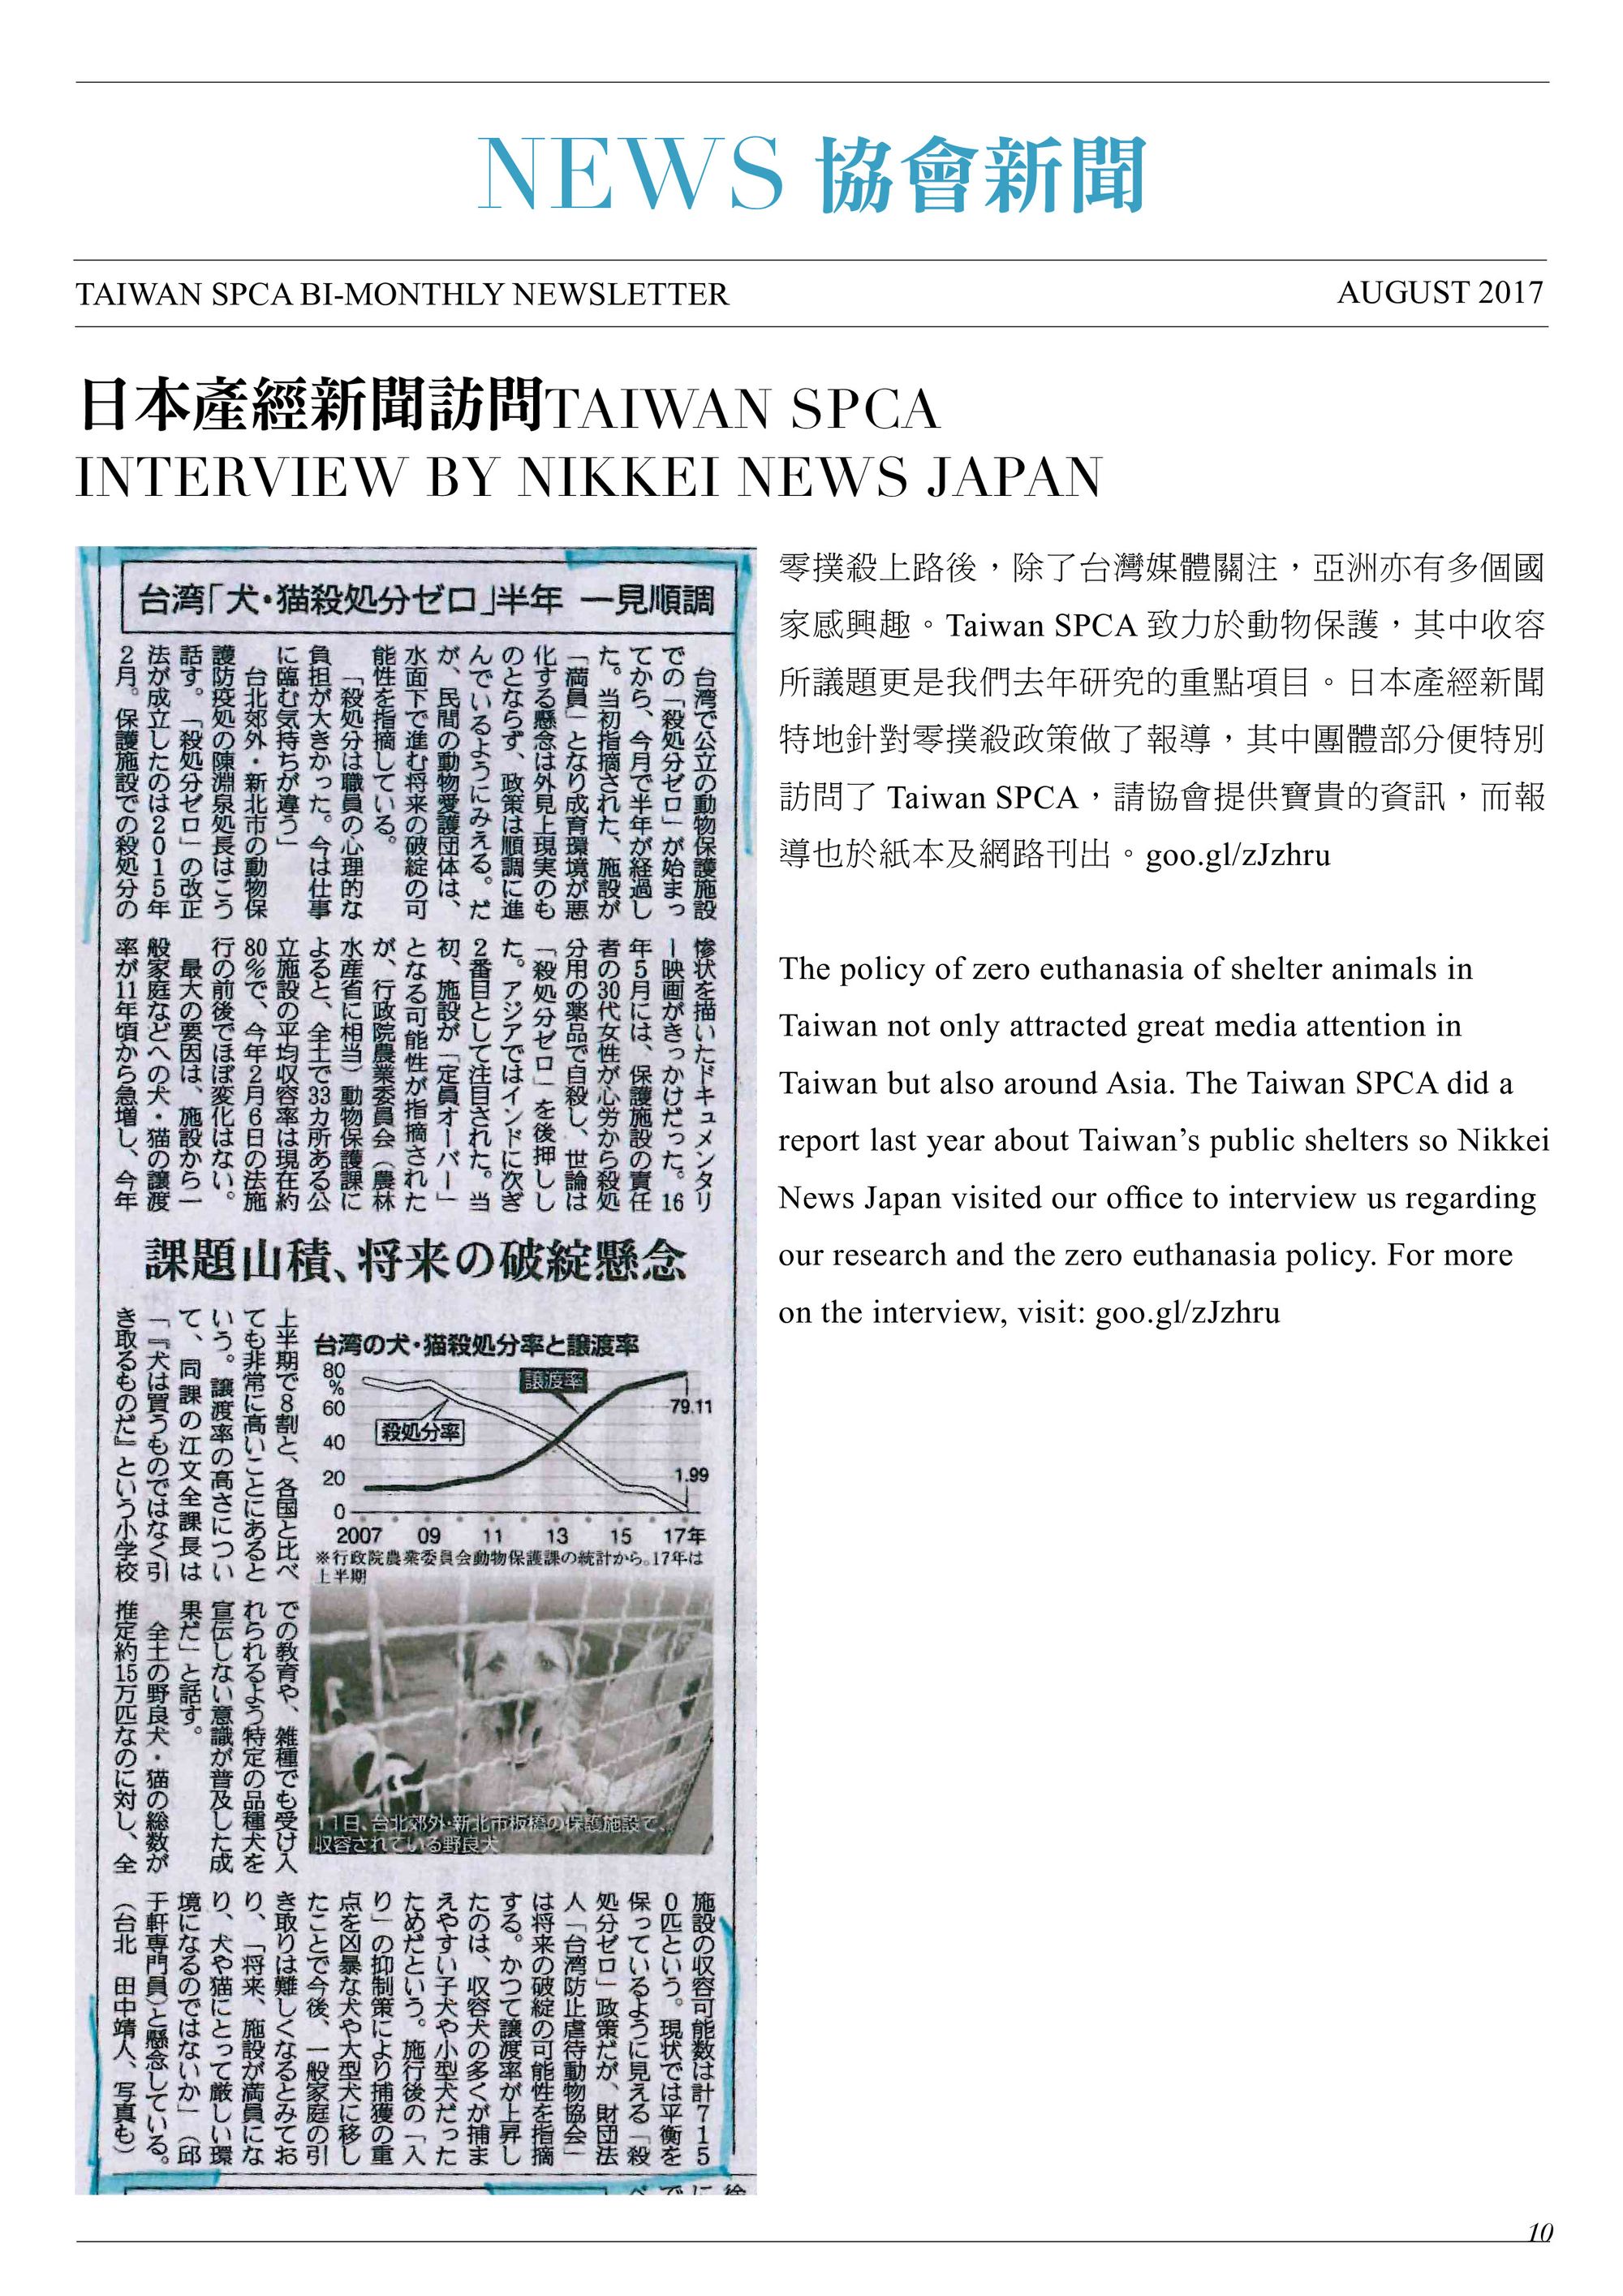 日本產經新聞訪問TAIWAN SPCA